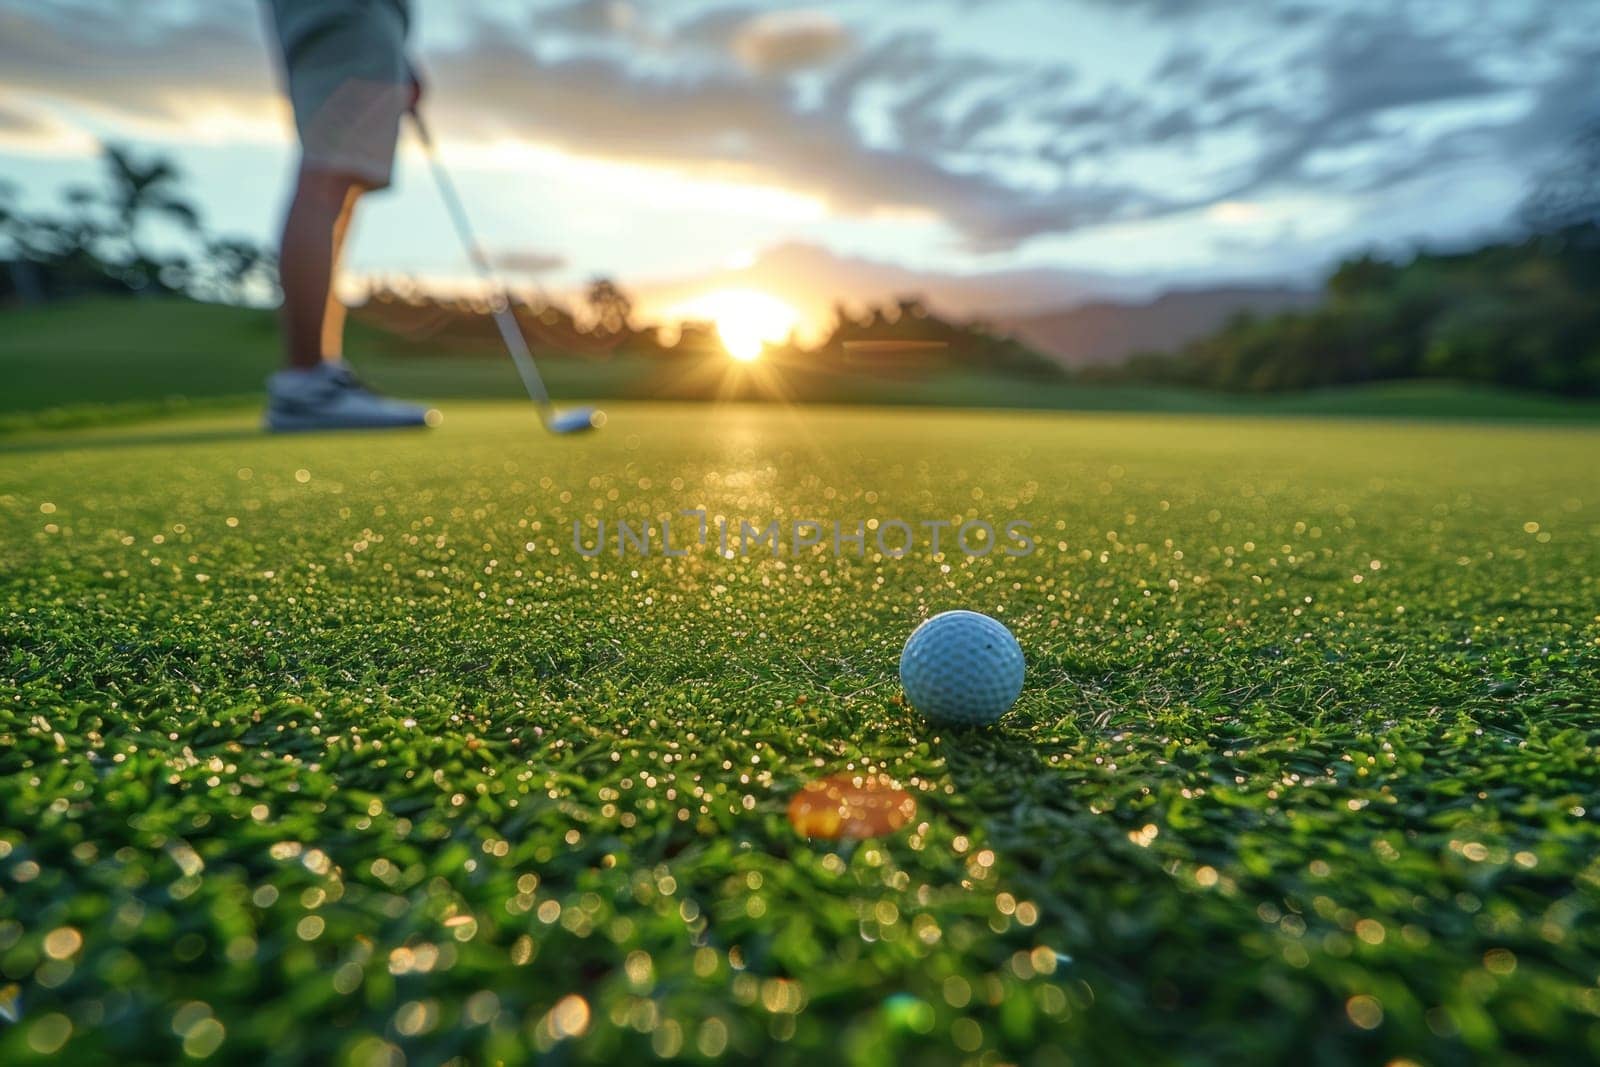 A golf ball is sitting on a green grass field.